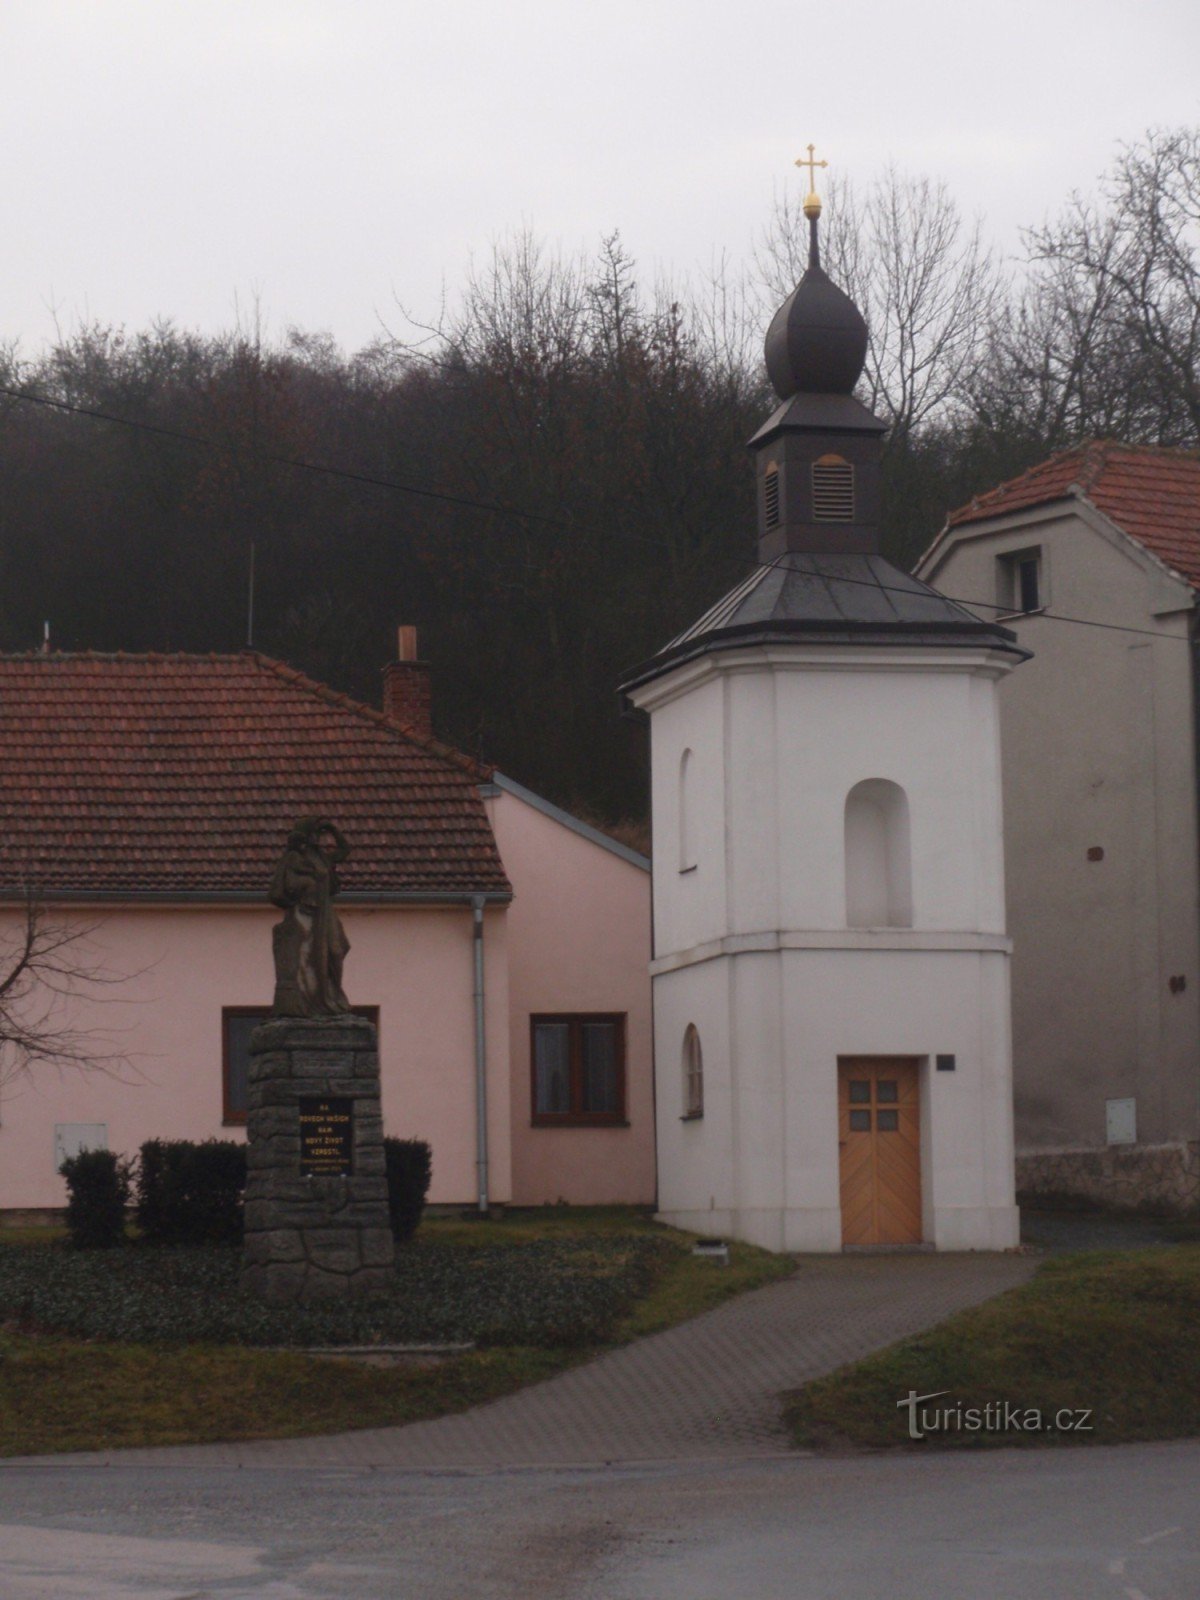 Μνημεία του χωριού Neslovice